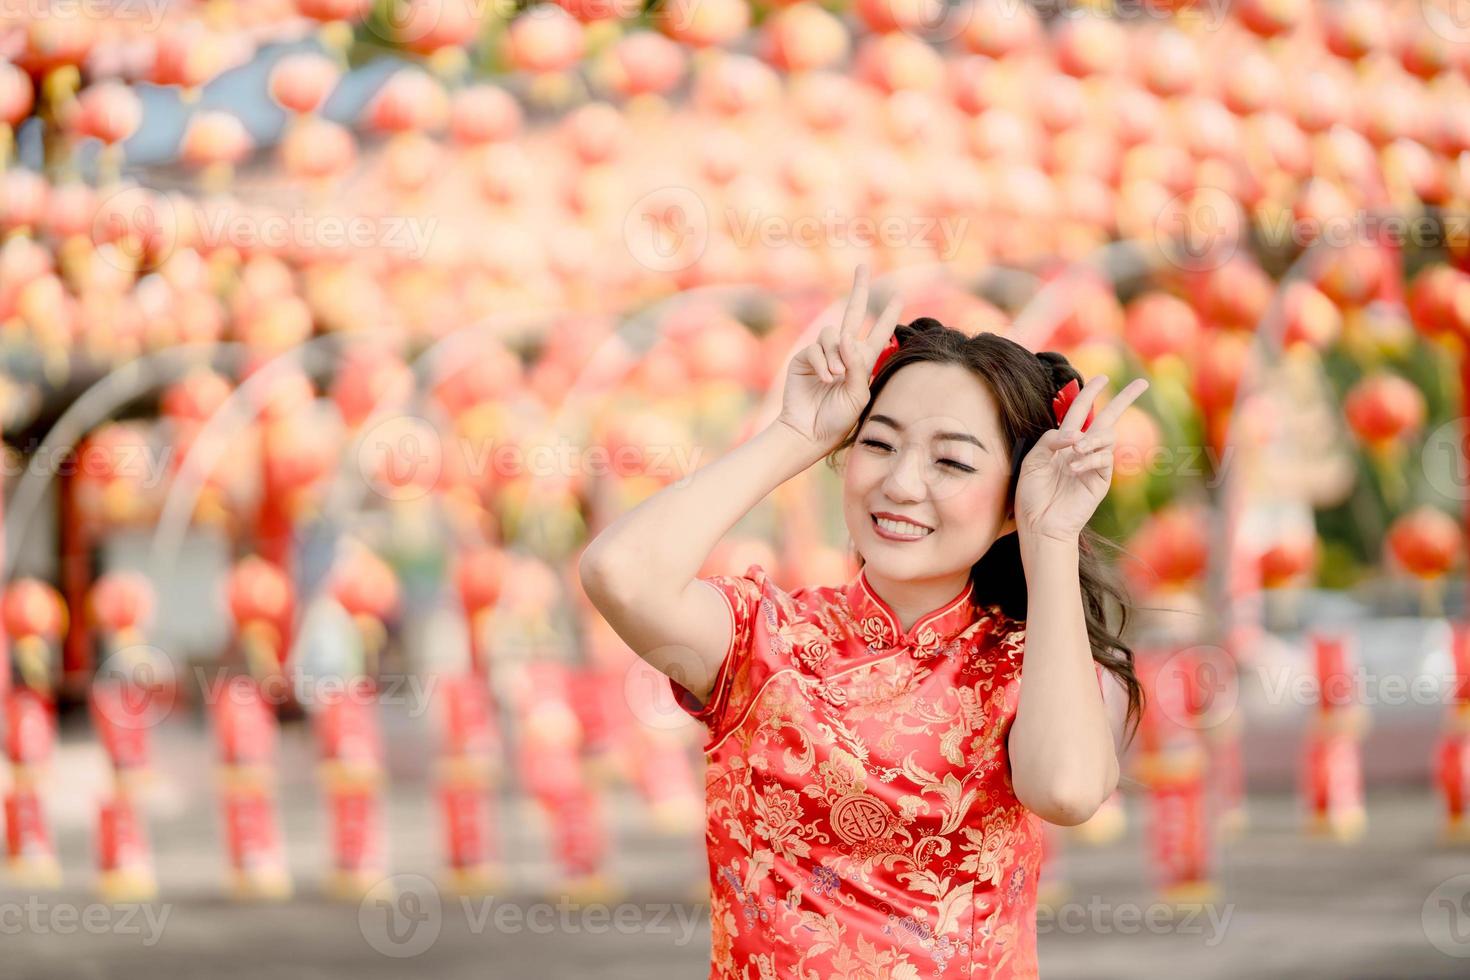 feliz Año Nuevo Chino. mujer asiática con vestido tradicional cheongsam qipao posando conejo en el templo budista chino. celebrar el año nuevo lunar chino, vacaciones de temporada festiva. foto